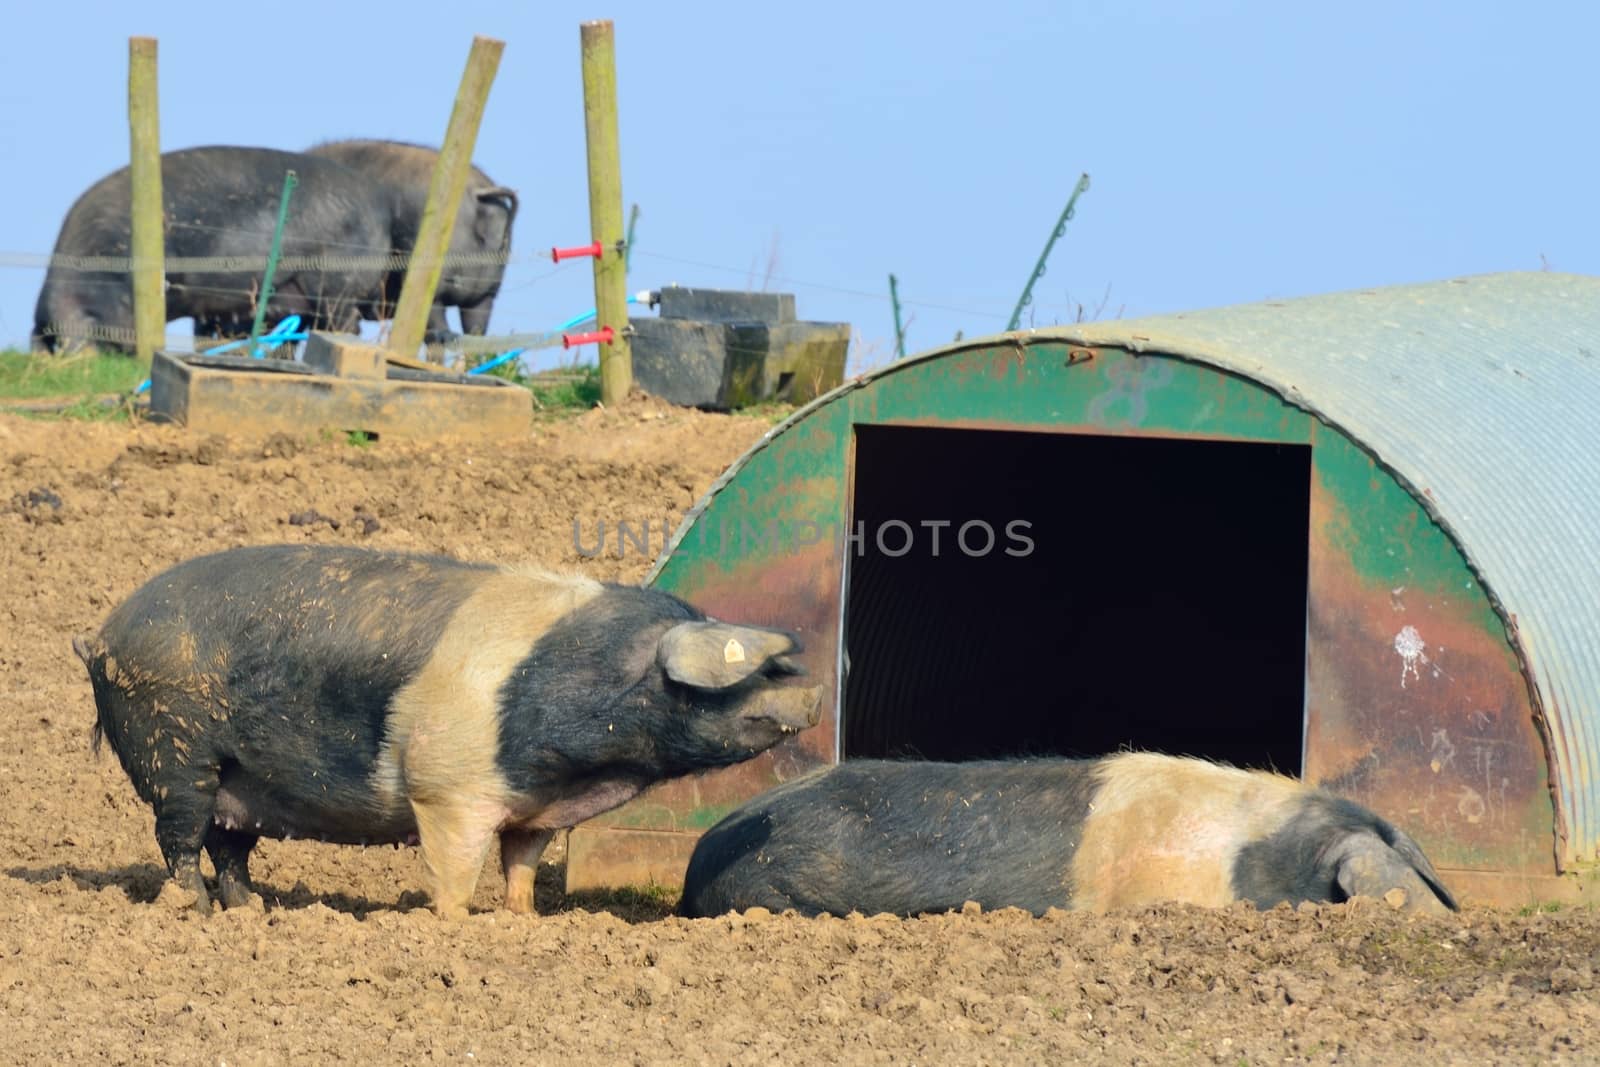 Free range pigs in field by pauws99